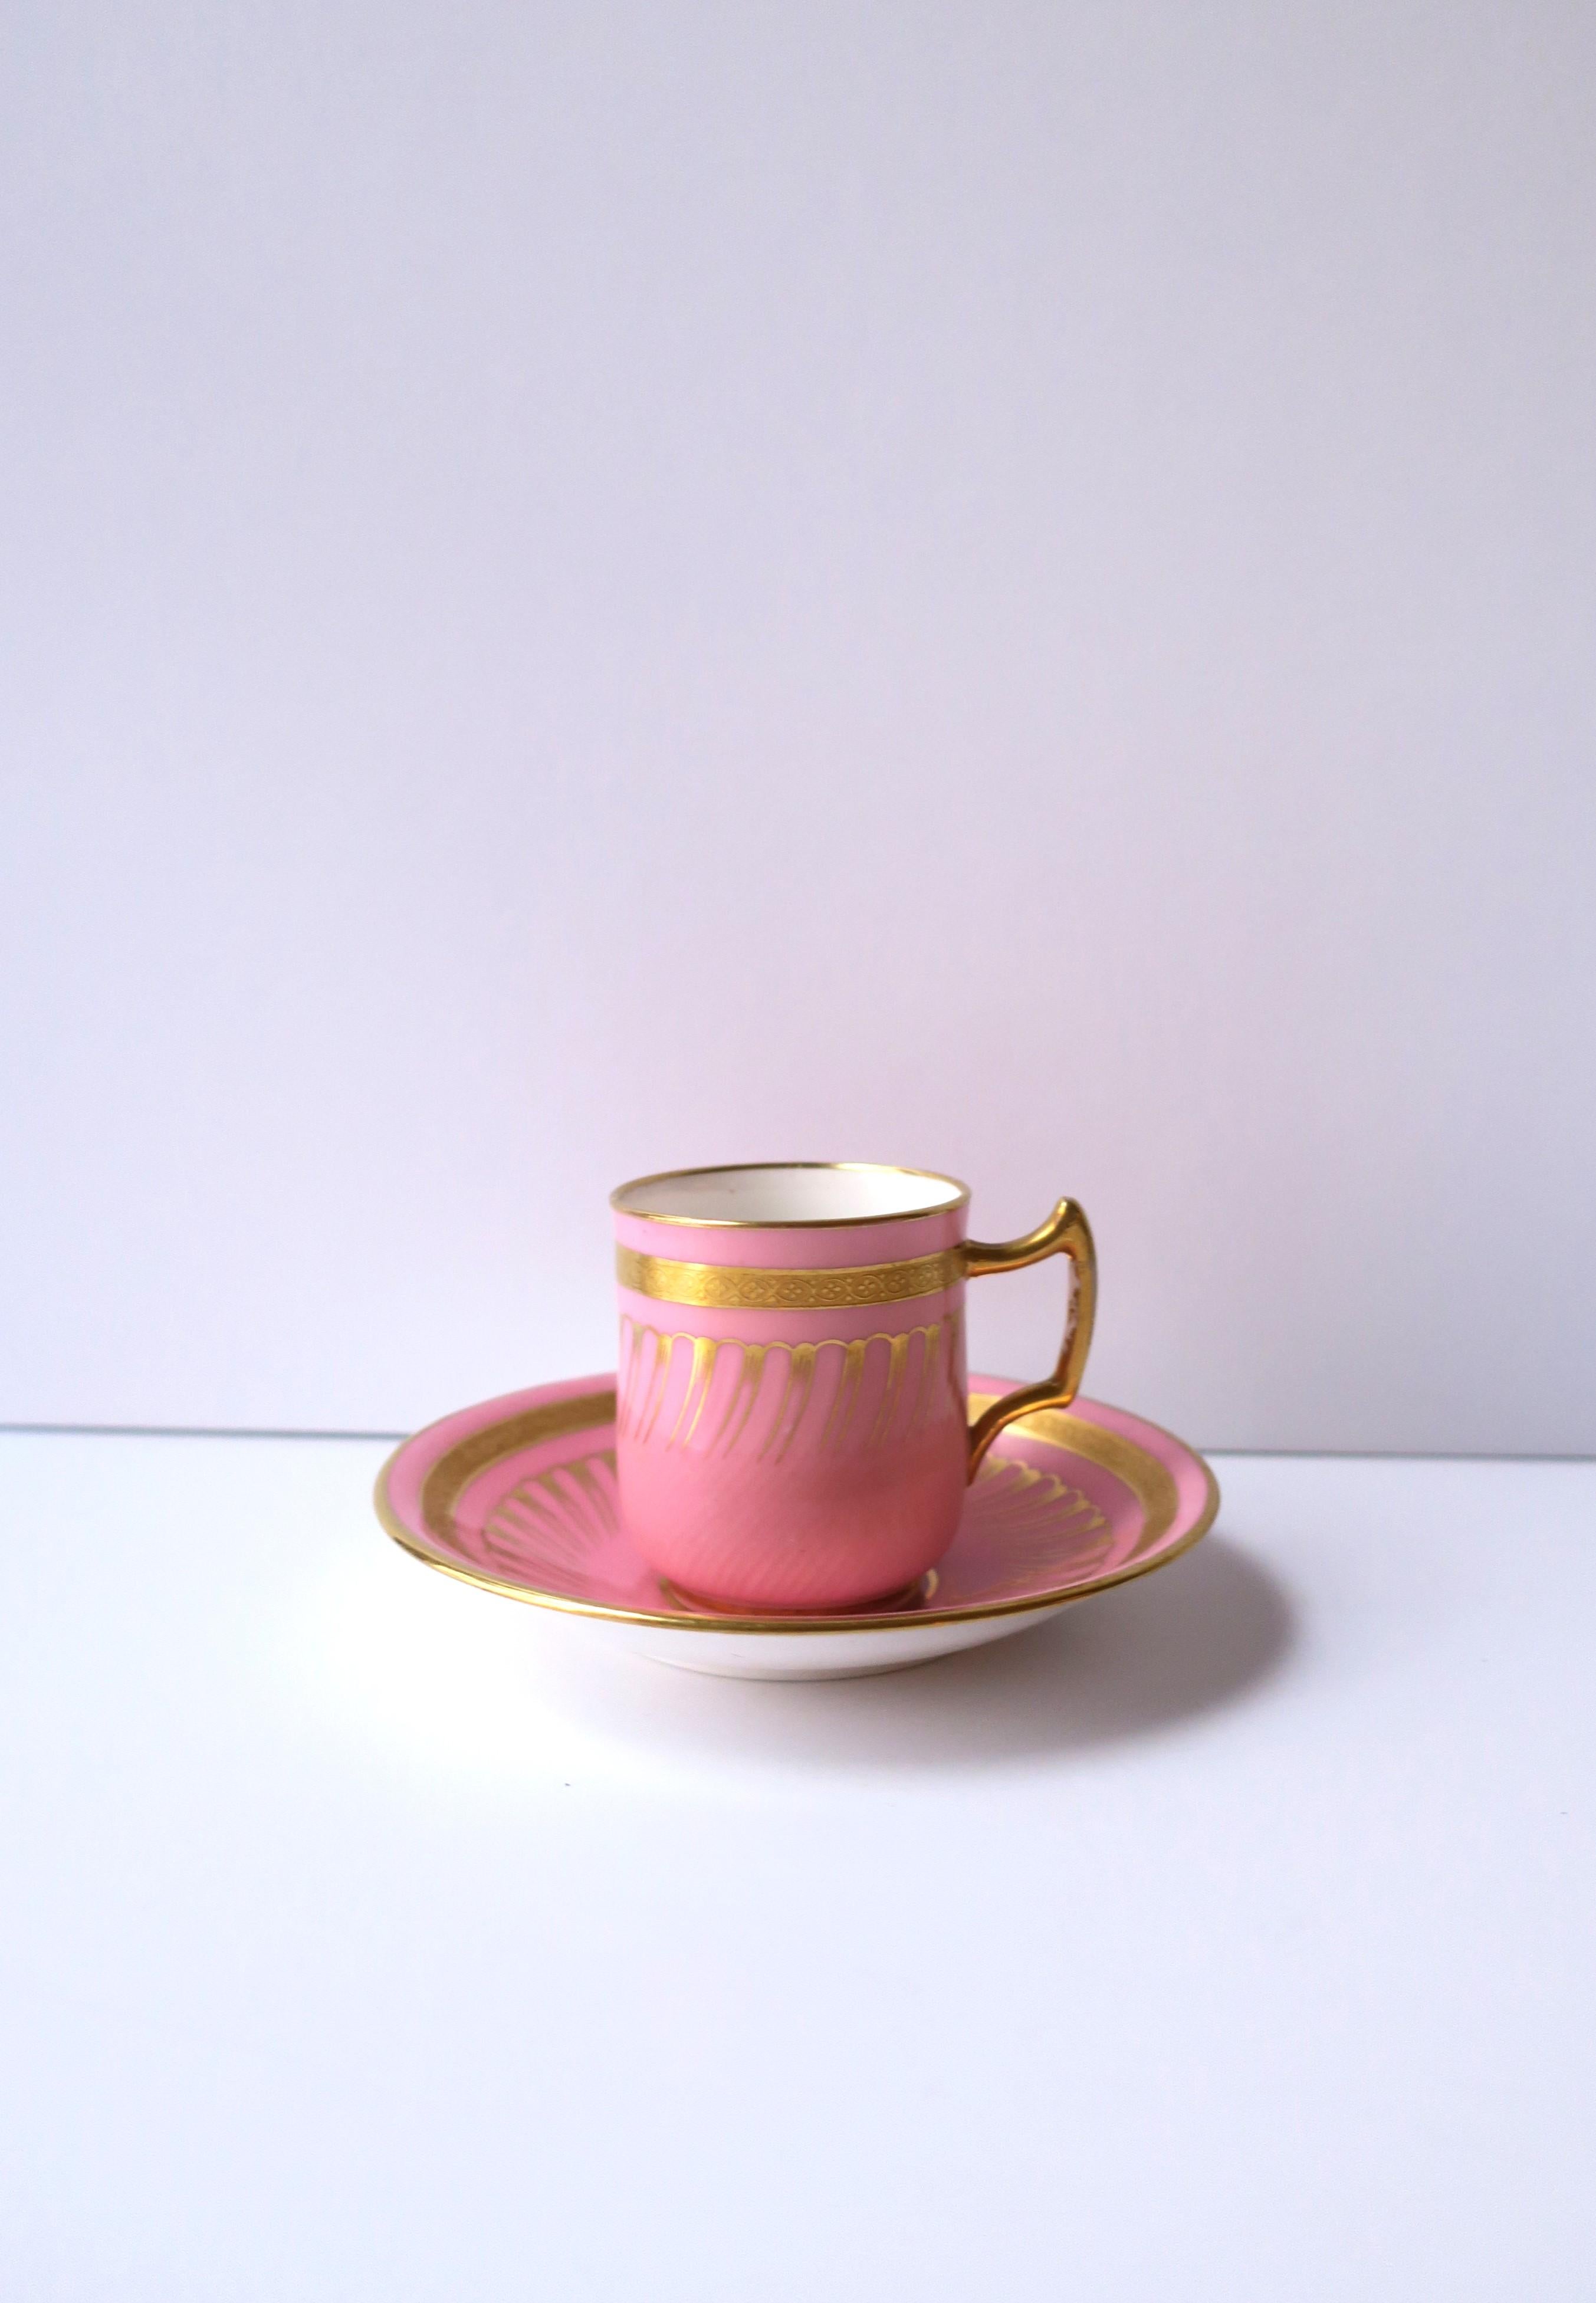 Très belle et rare tasse à café et soucoupe en porcelaine anglaise rose et or réalisée par Minton expressément pour Gilman Collamore & Co, New York, vers la fin du 19e siècle, Angleterre. Les teintes rose et or sur la porcelaine blanche forment une